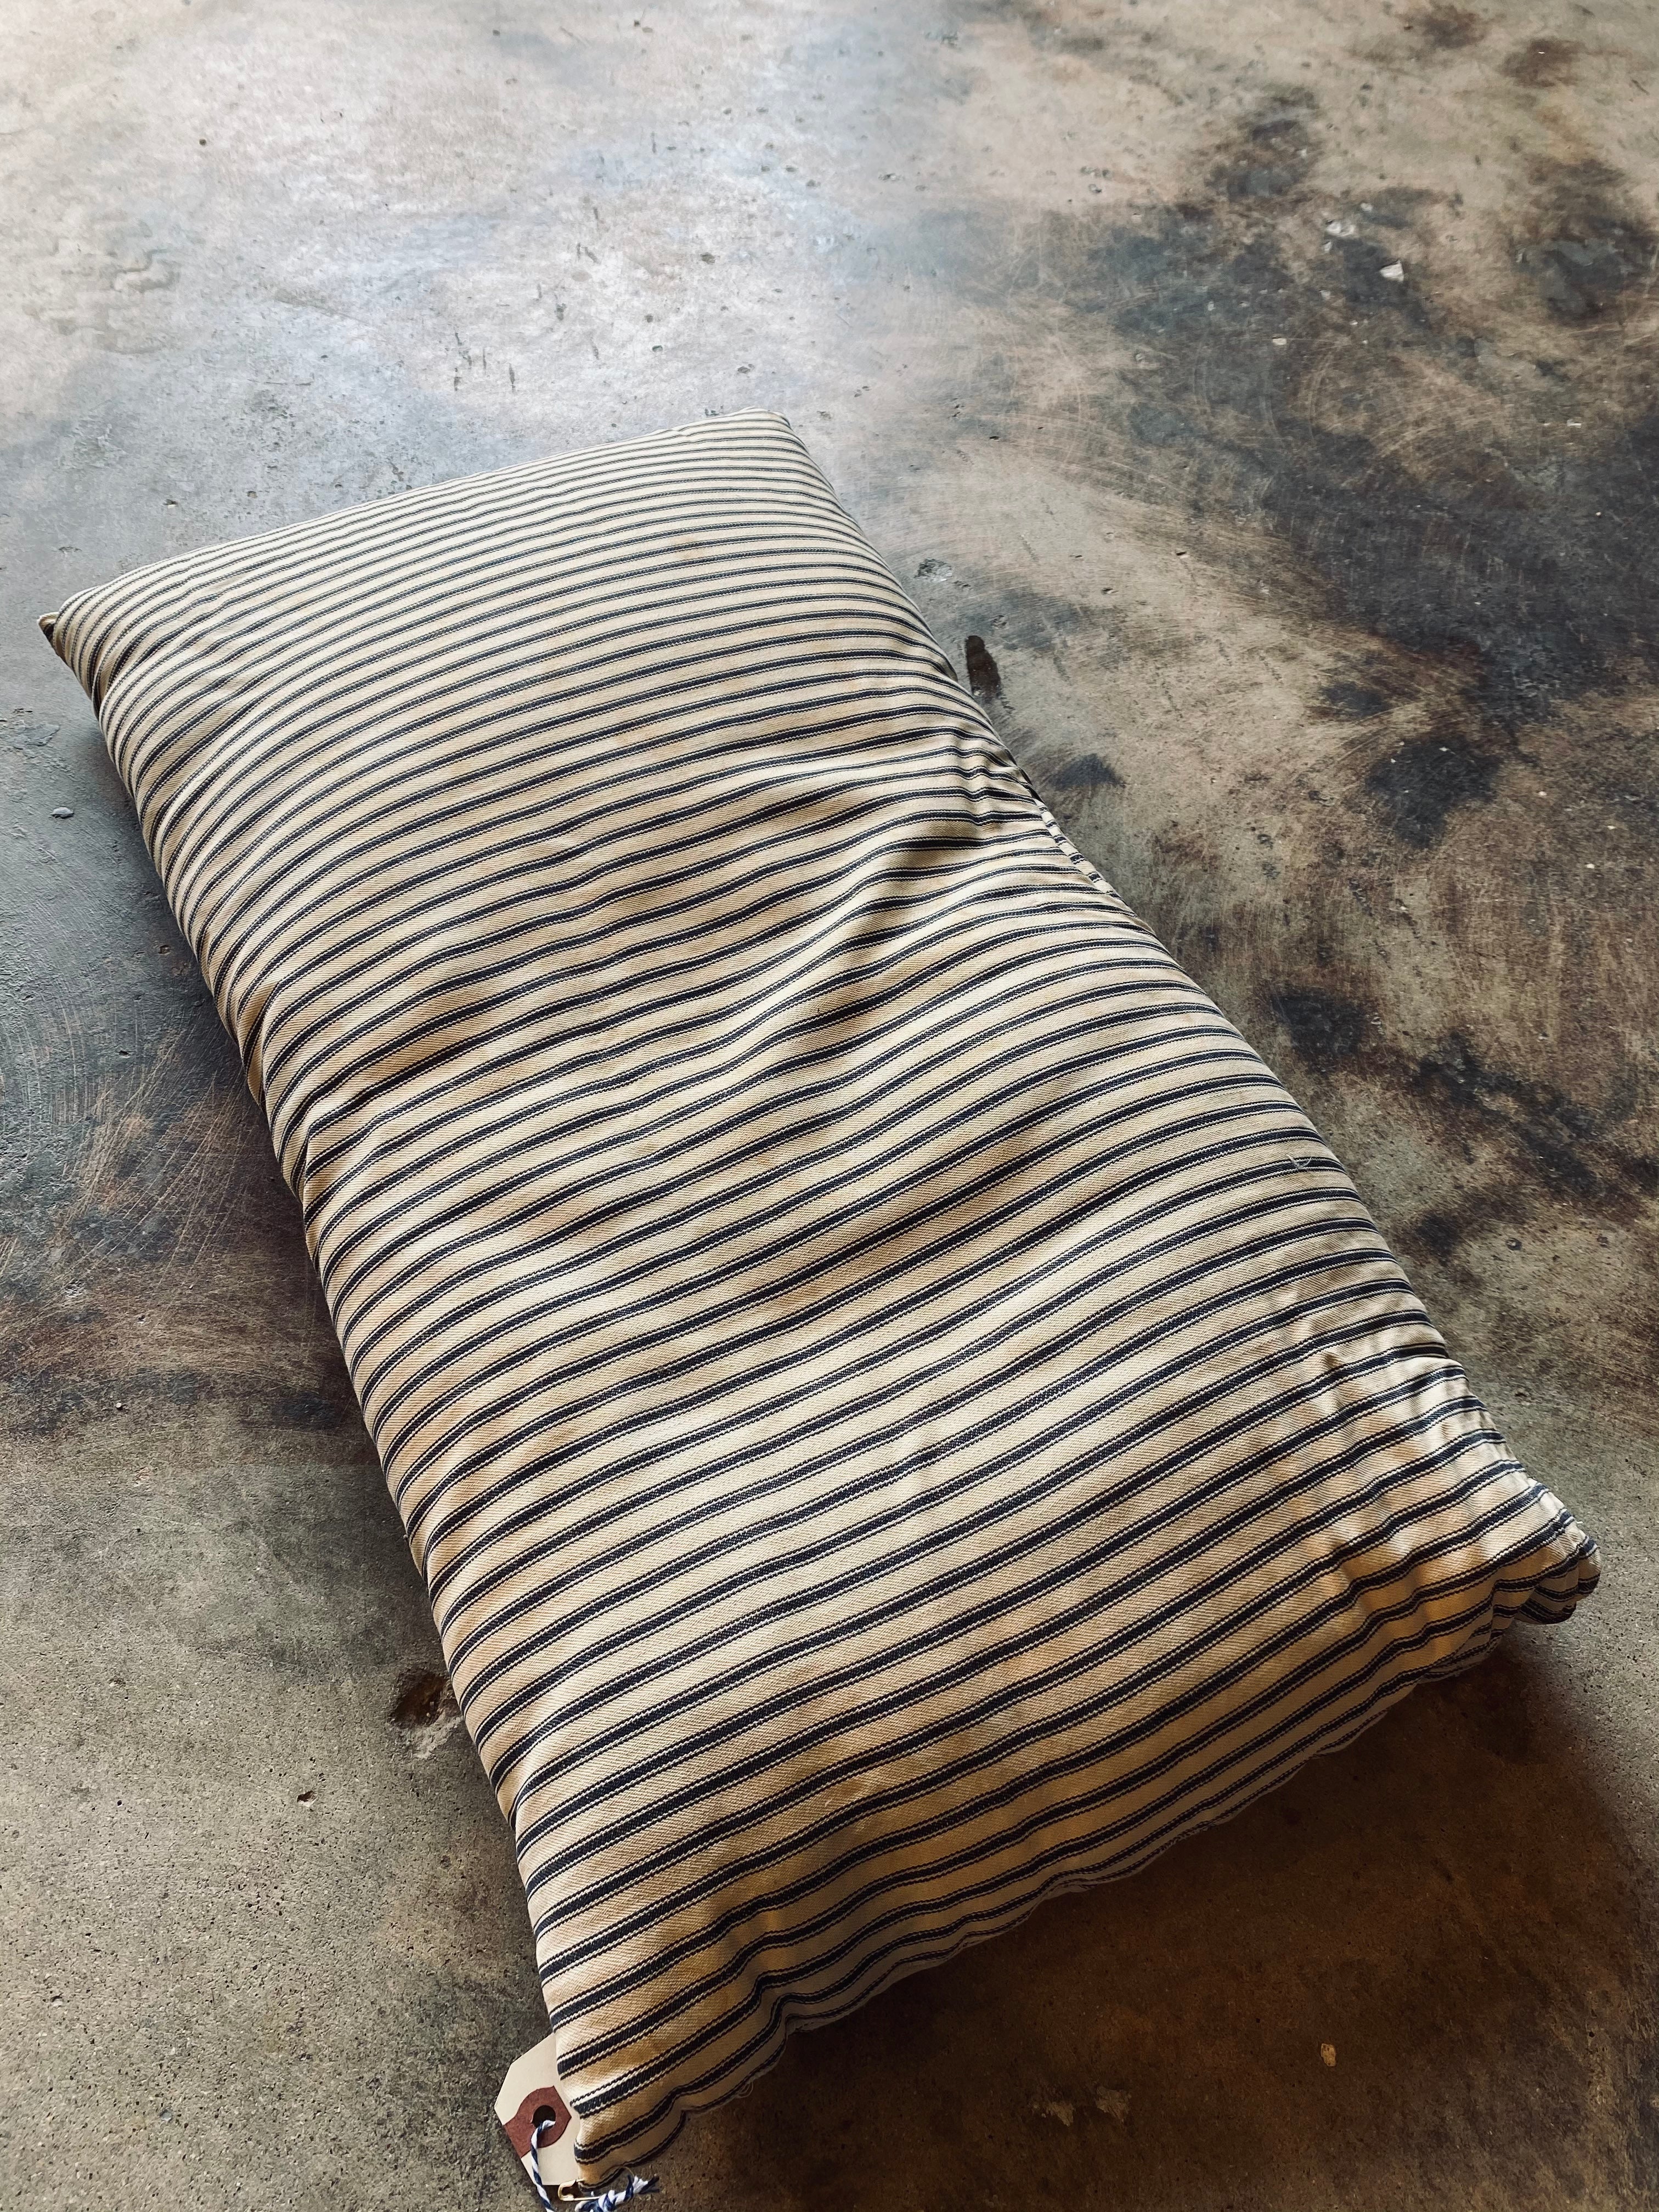 1930s Mattress Ticking Fabric Pillow